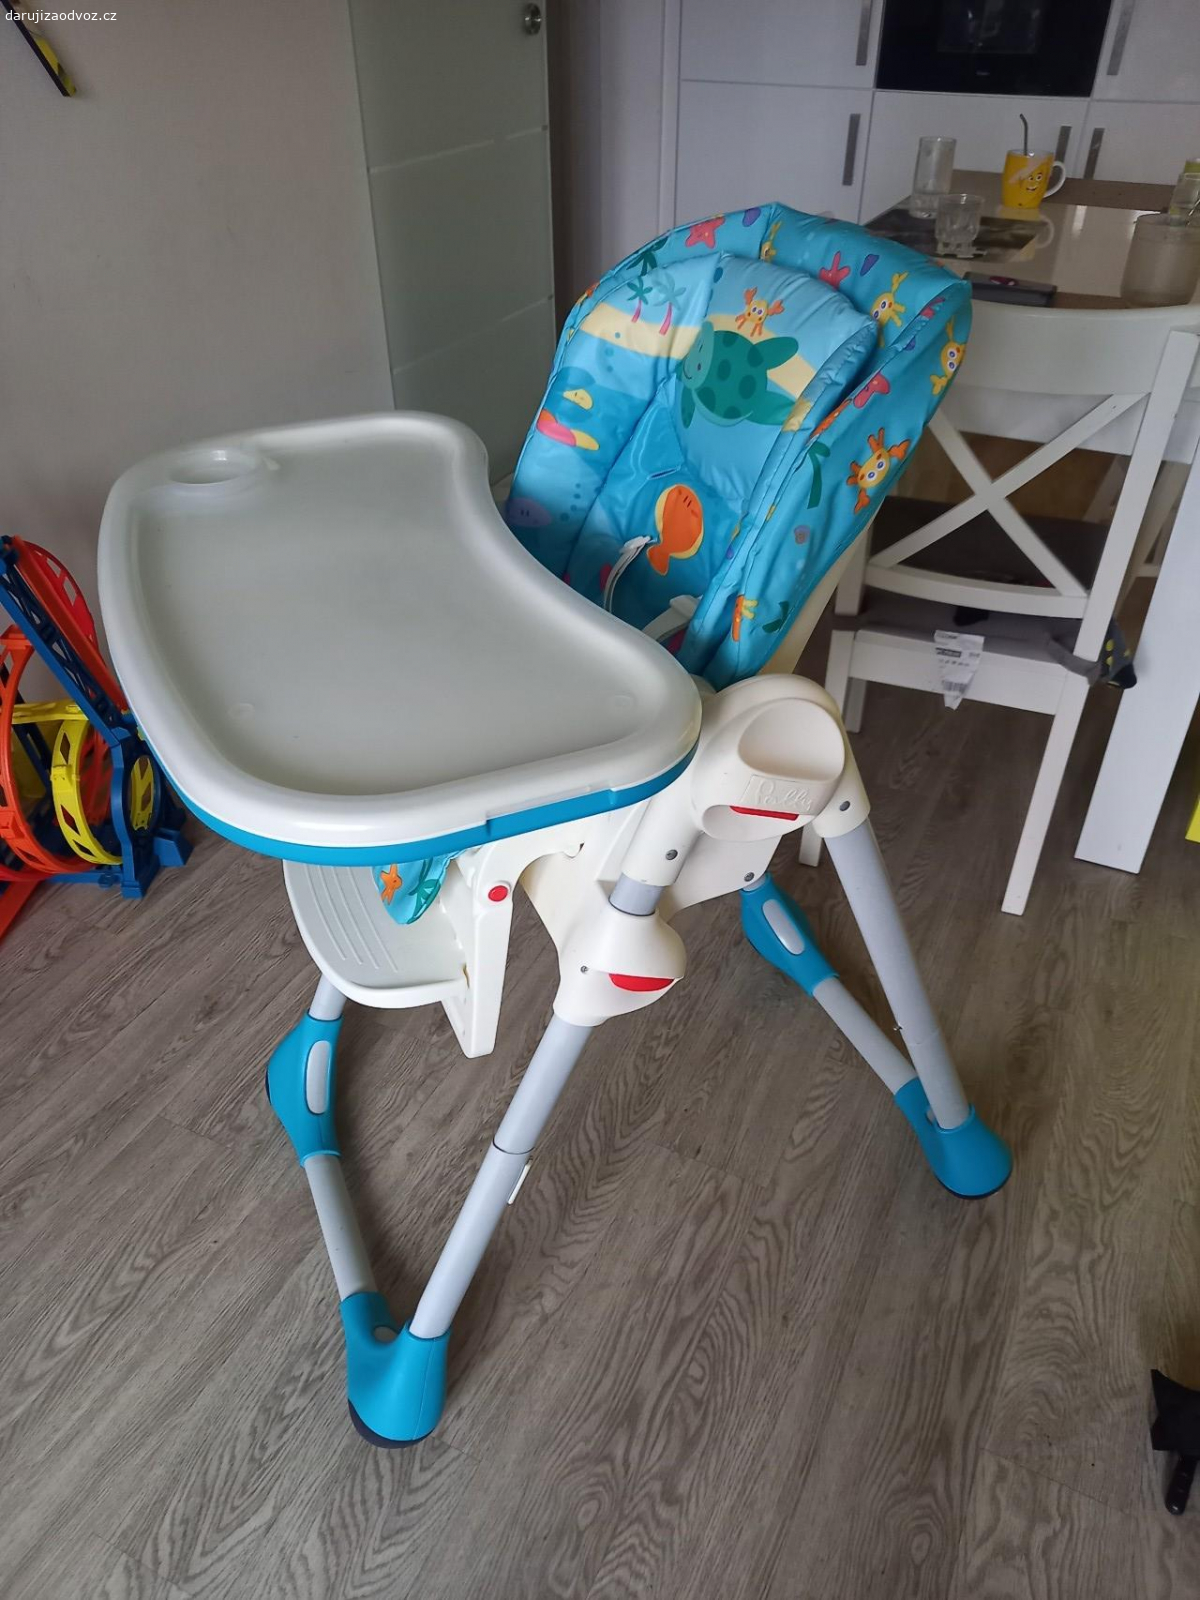 Jídelní židlička Chicco Polly. za odvoz dětská jídelní židlička.  Zcela funkčni, čistá. Potah je místy popraskaný,  ale použitelný.  Případně se dá koupit nový.